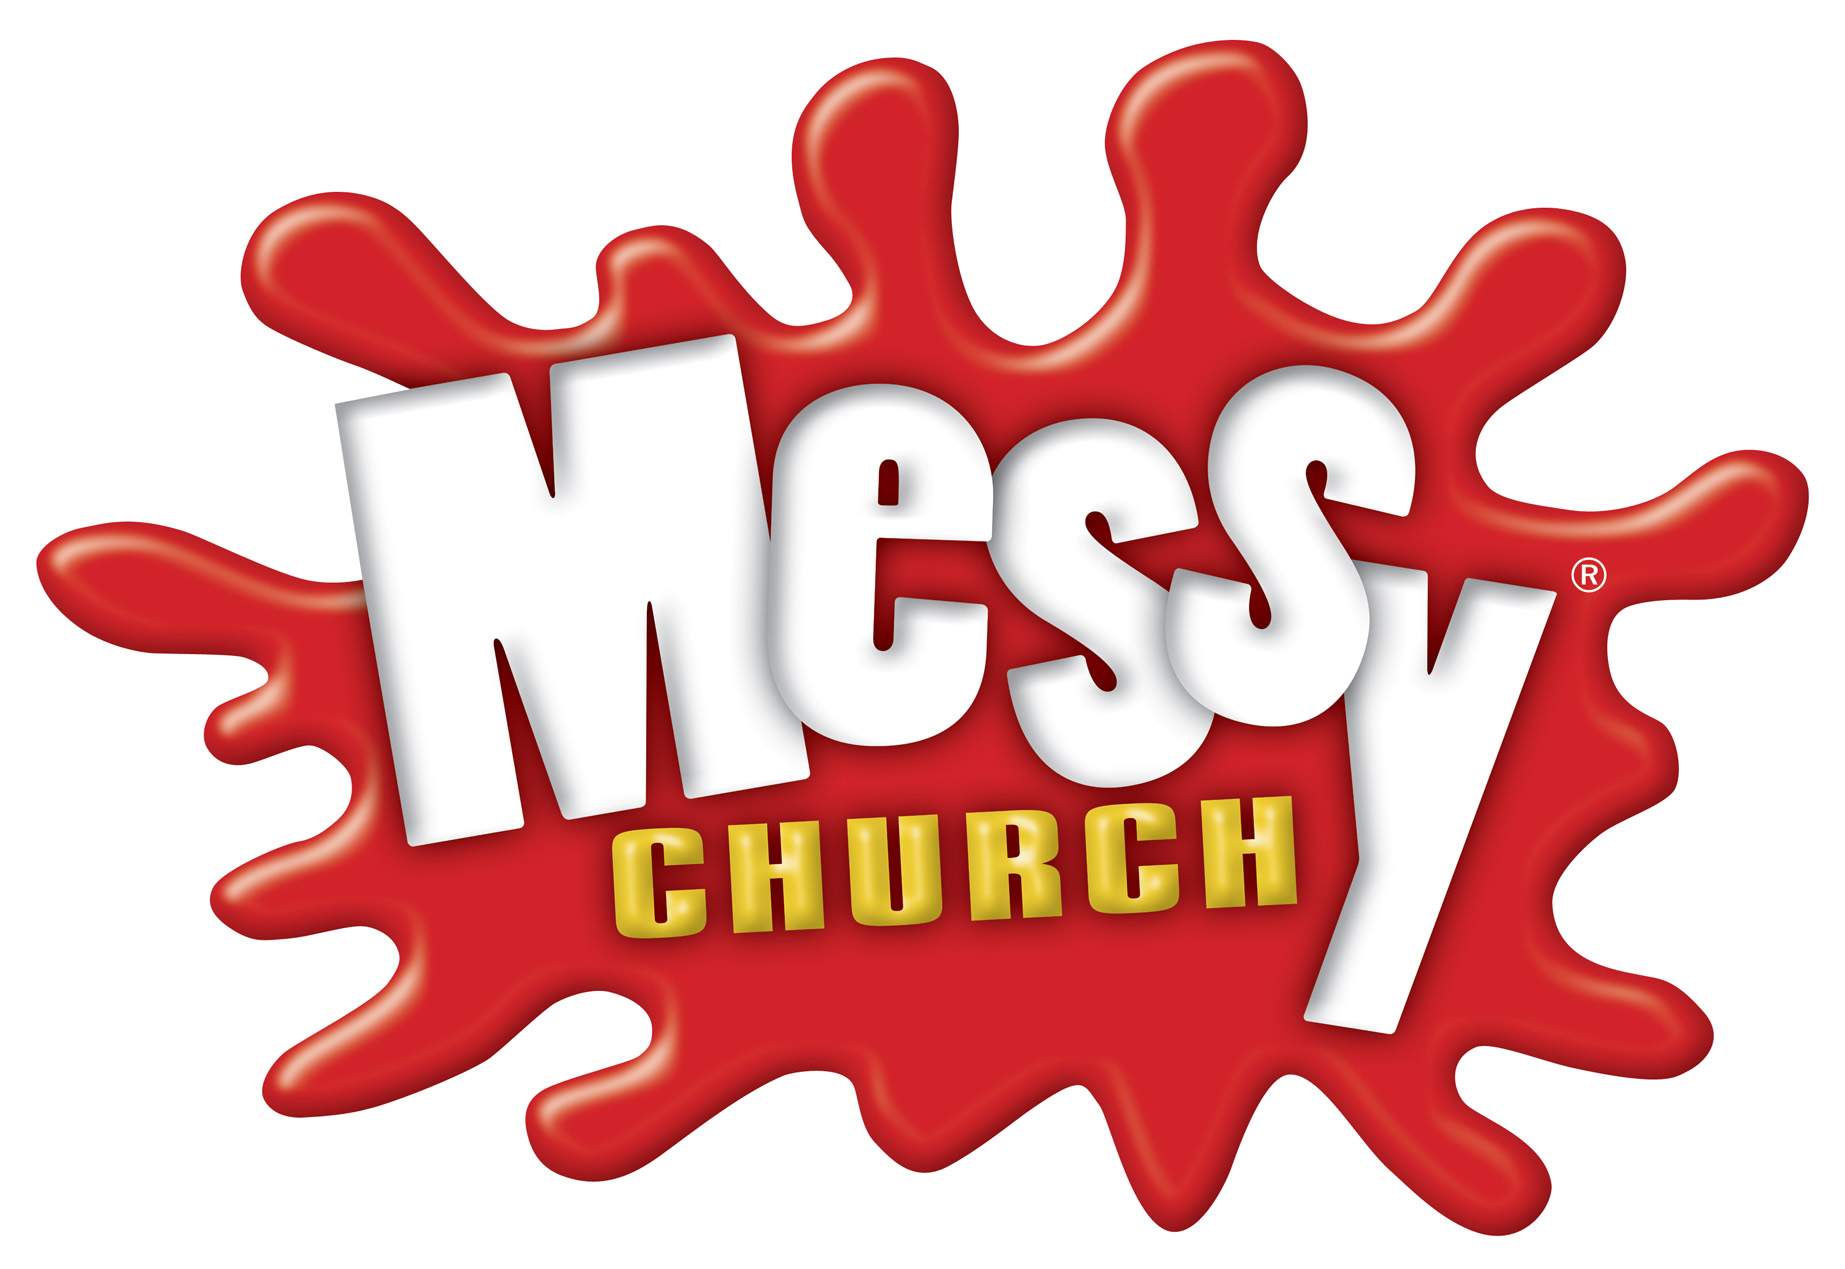 messy-church-logo-high-res.jpg